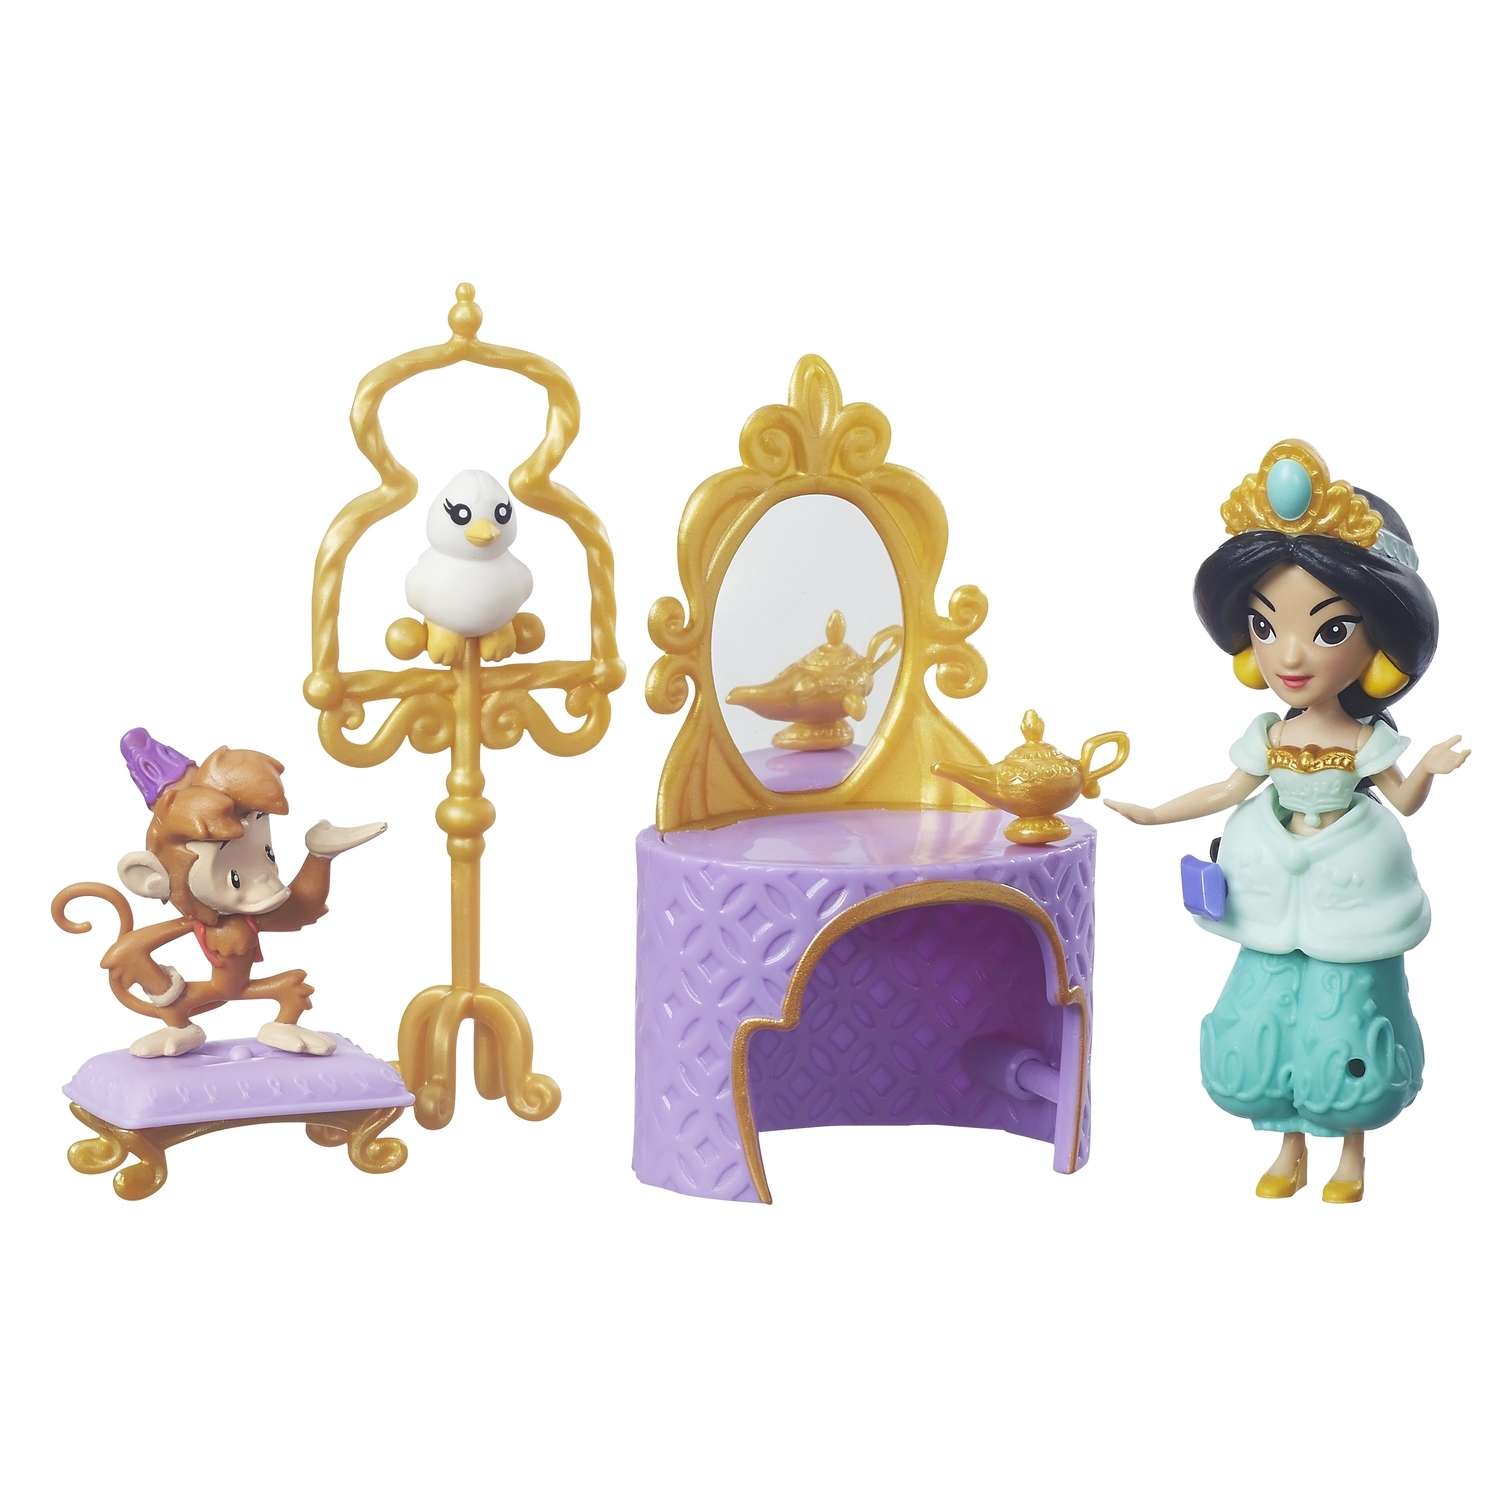 Игровой набор Princess маленькая кукла Принцесса и туалетный столик Жасмин B7164EU40 B5341EU4 - фото 1